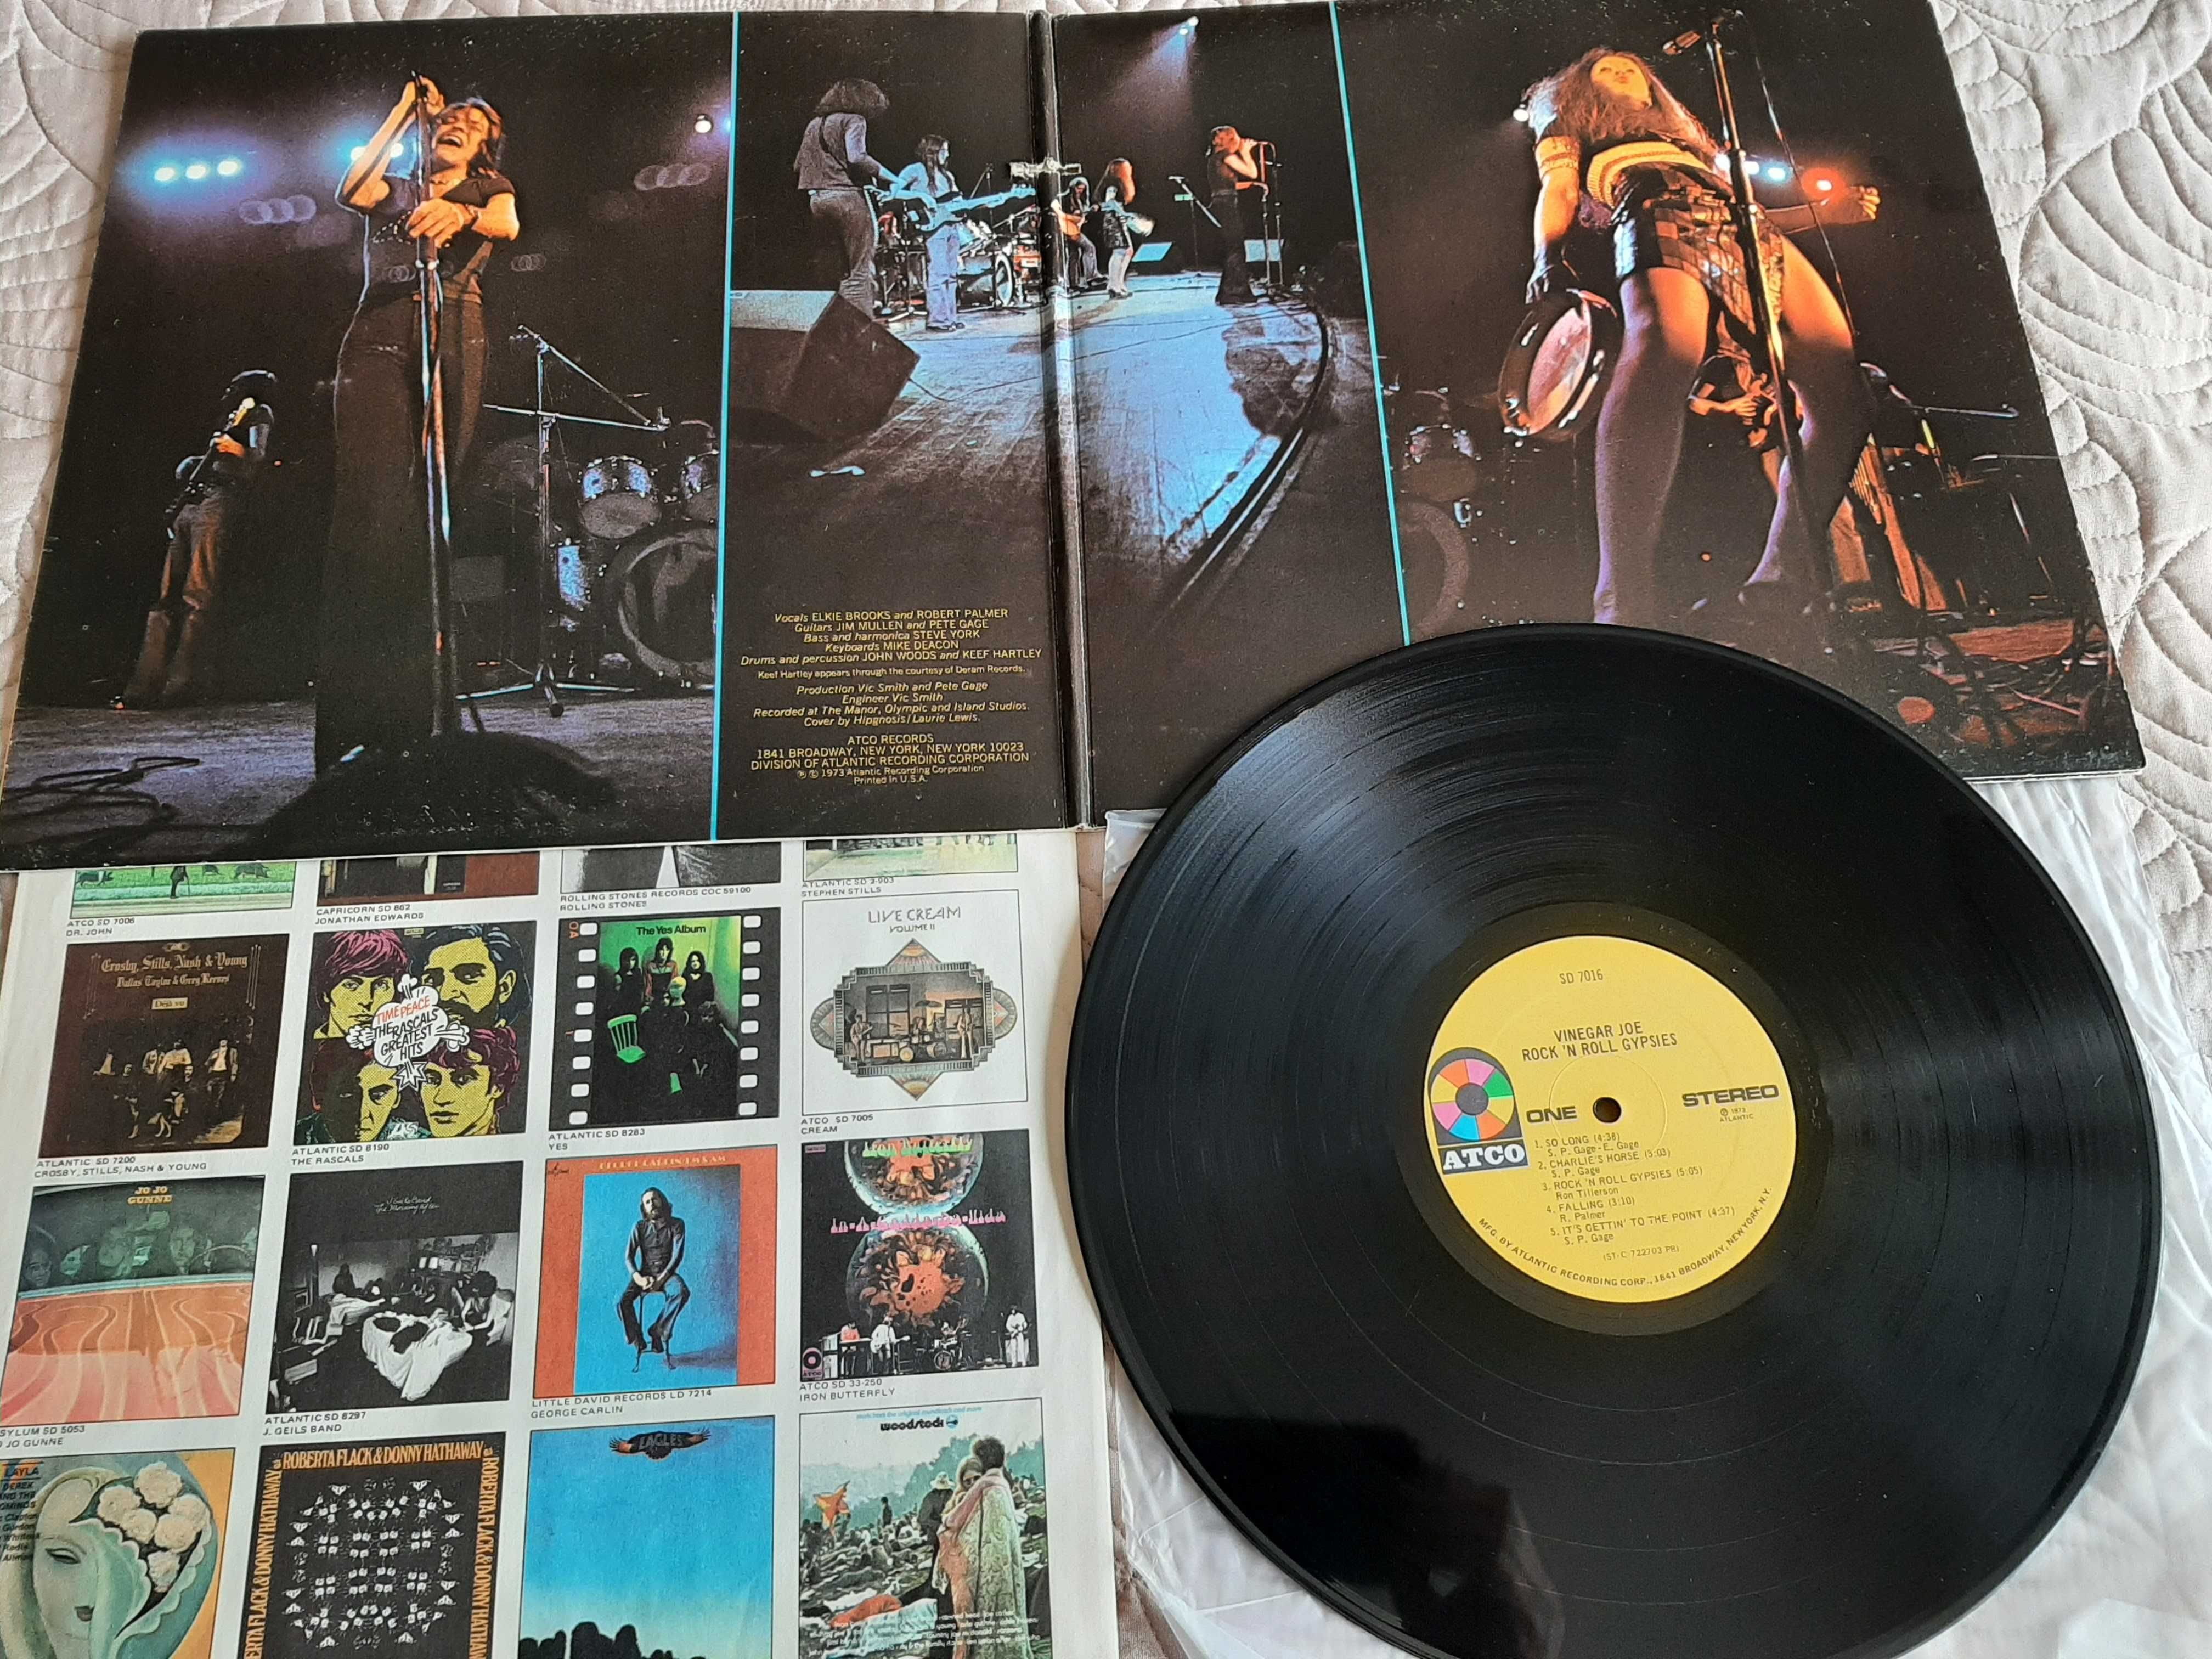 Vinegar Joe – Bob Mcbride – Roxy Music - Focus – Deep Purple -Vinil LP